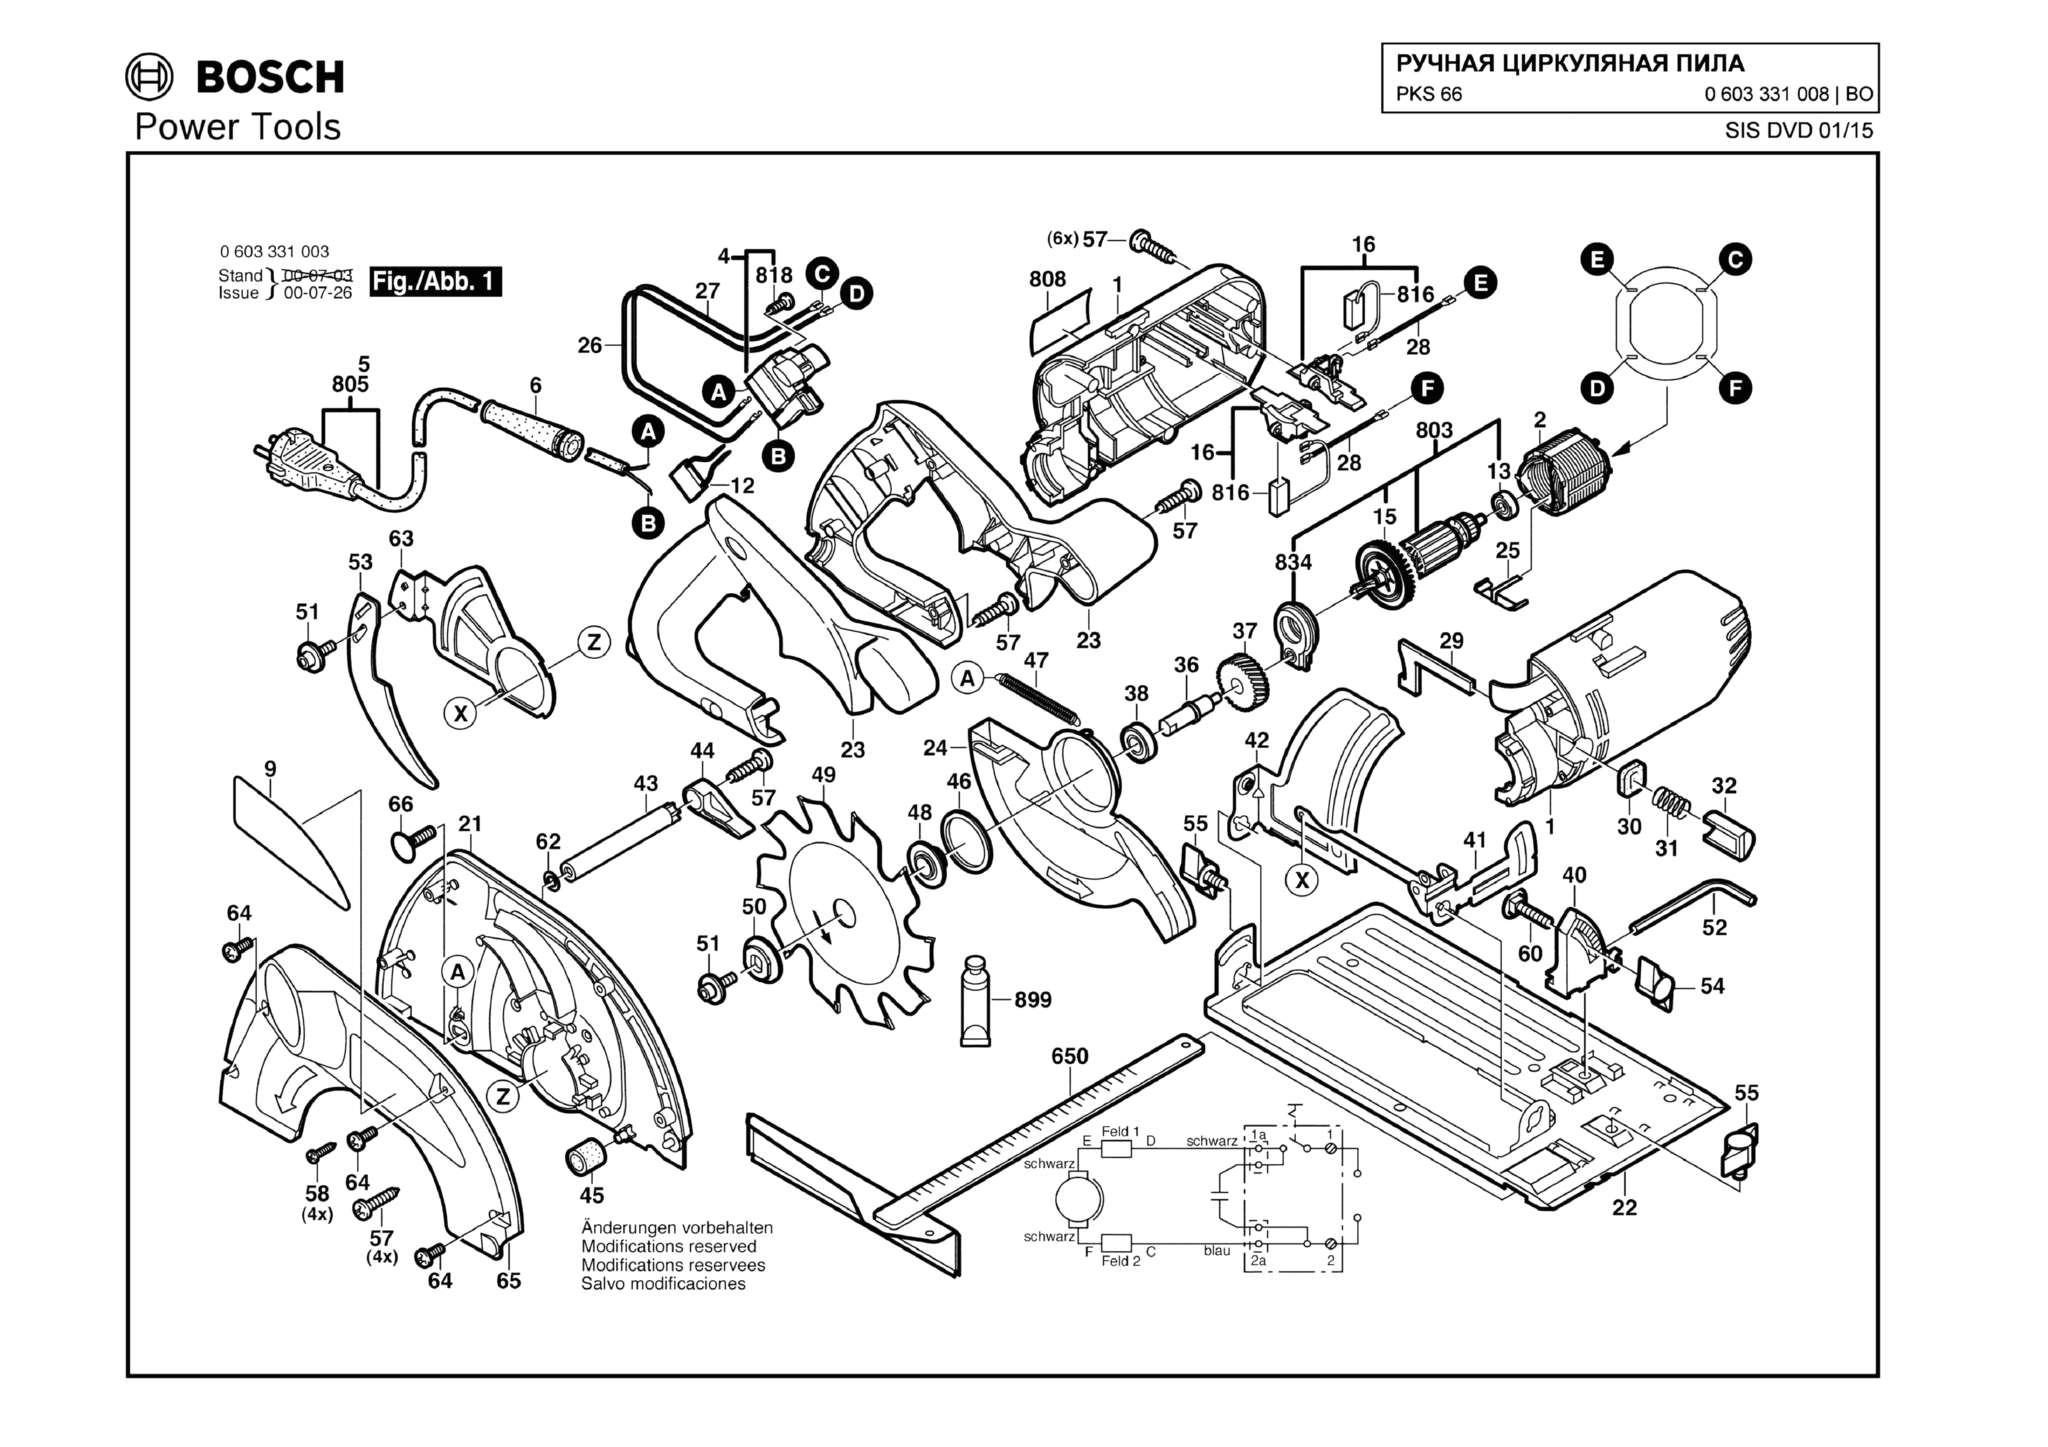 Запчасти, схема и деталировка Bosch PKS 66 (ТИП 0603331008)